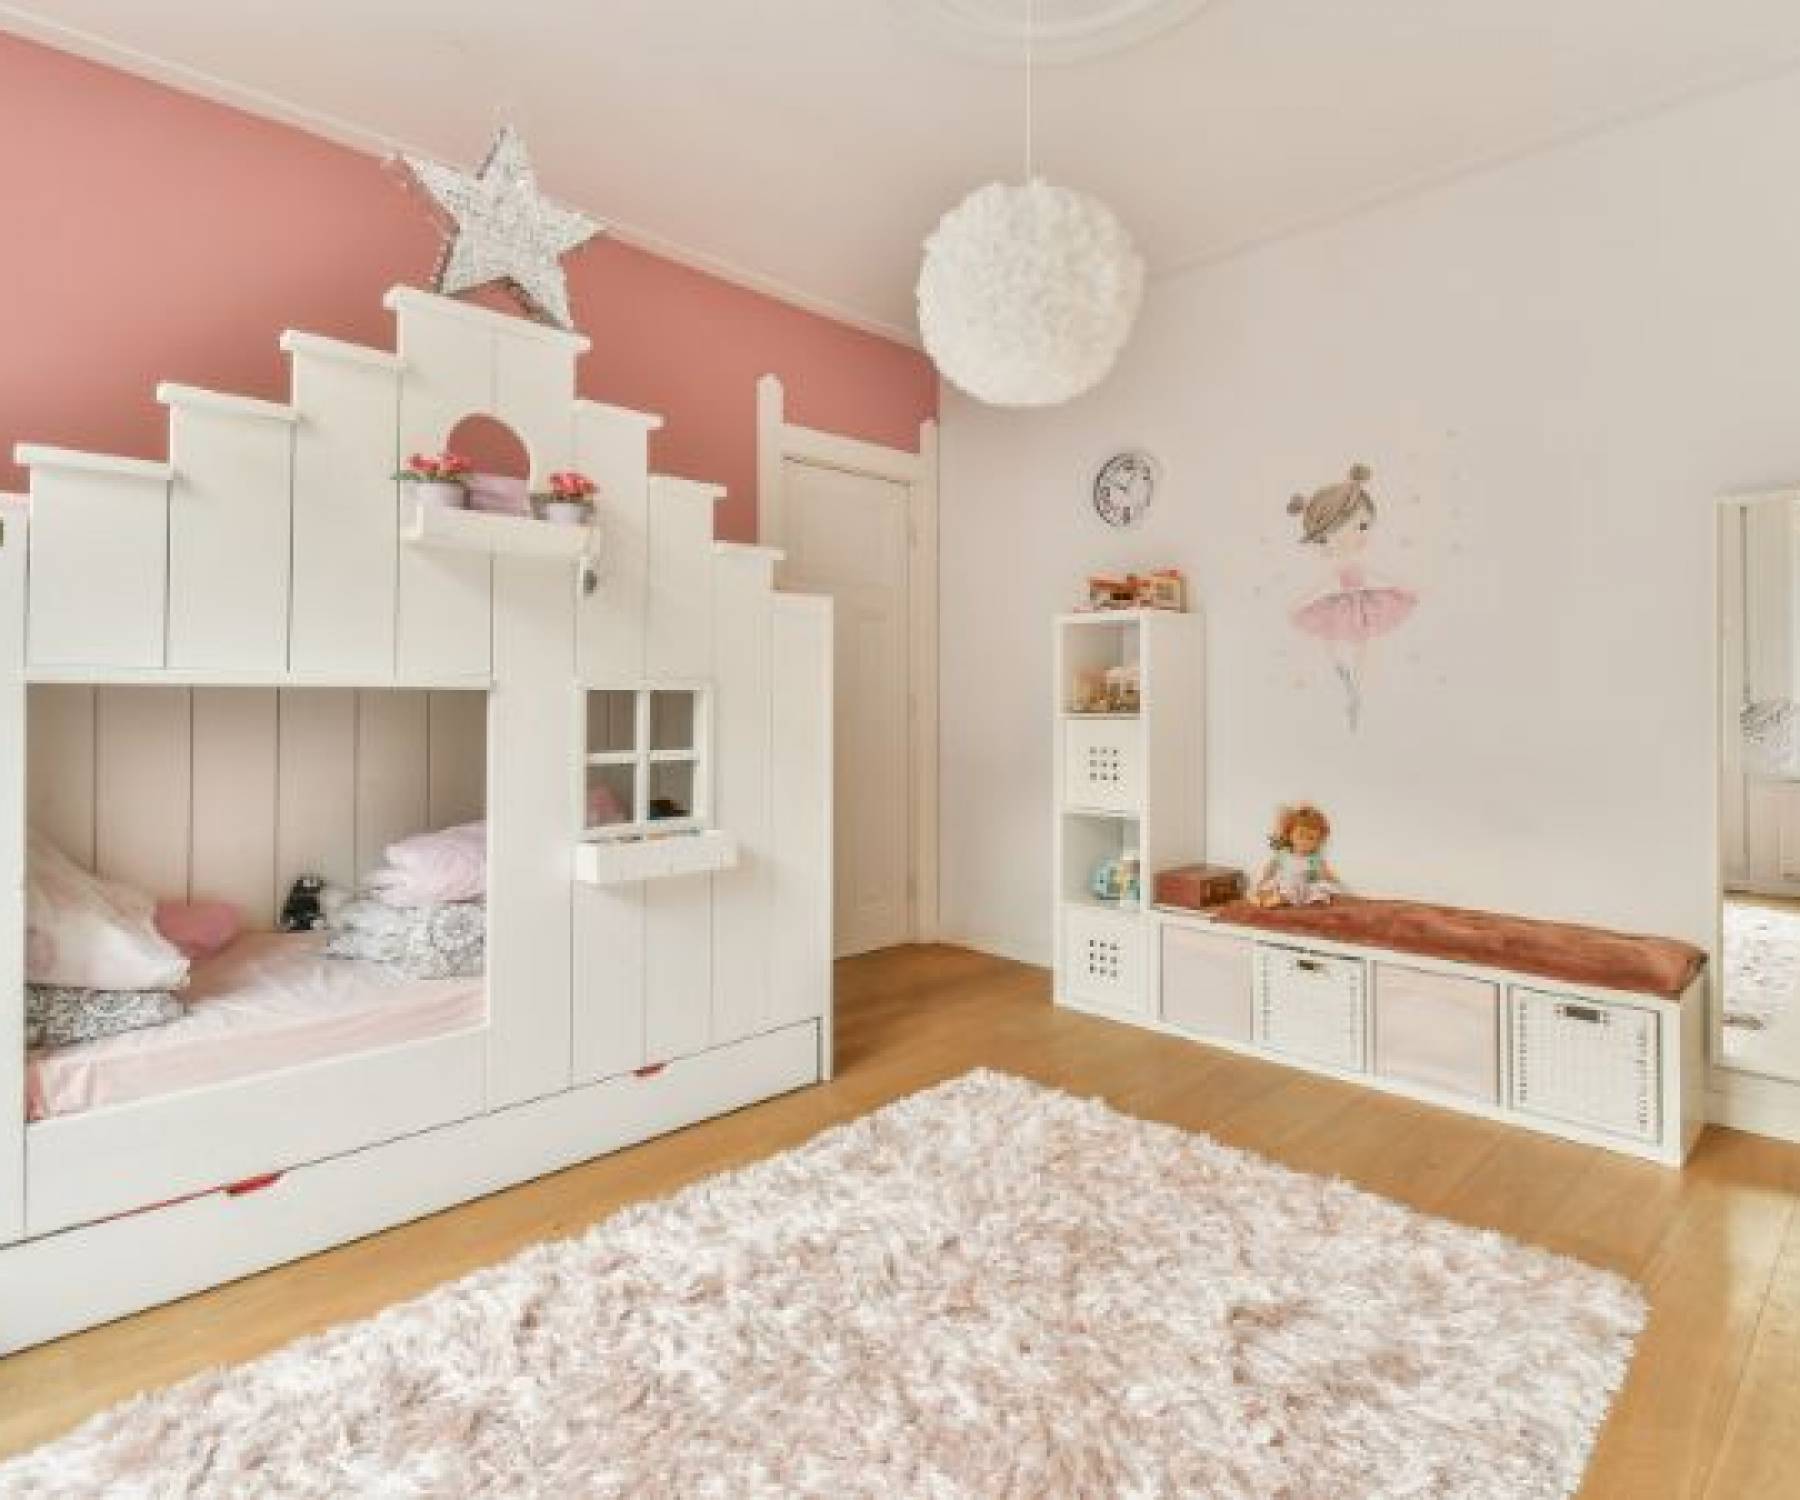 Porady dotyczące projektowania pokoju dziecięcego: Pomysły na dekoracje i sugestie dotyczące mebli